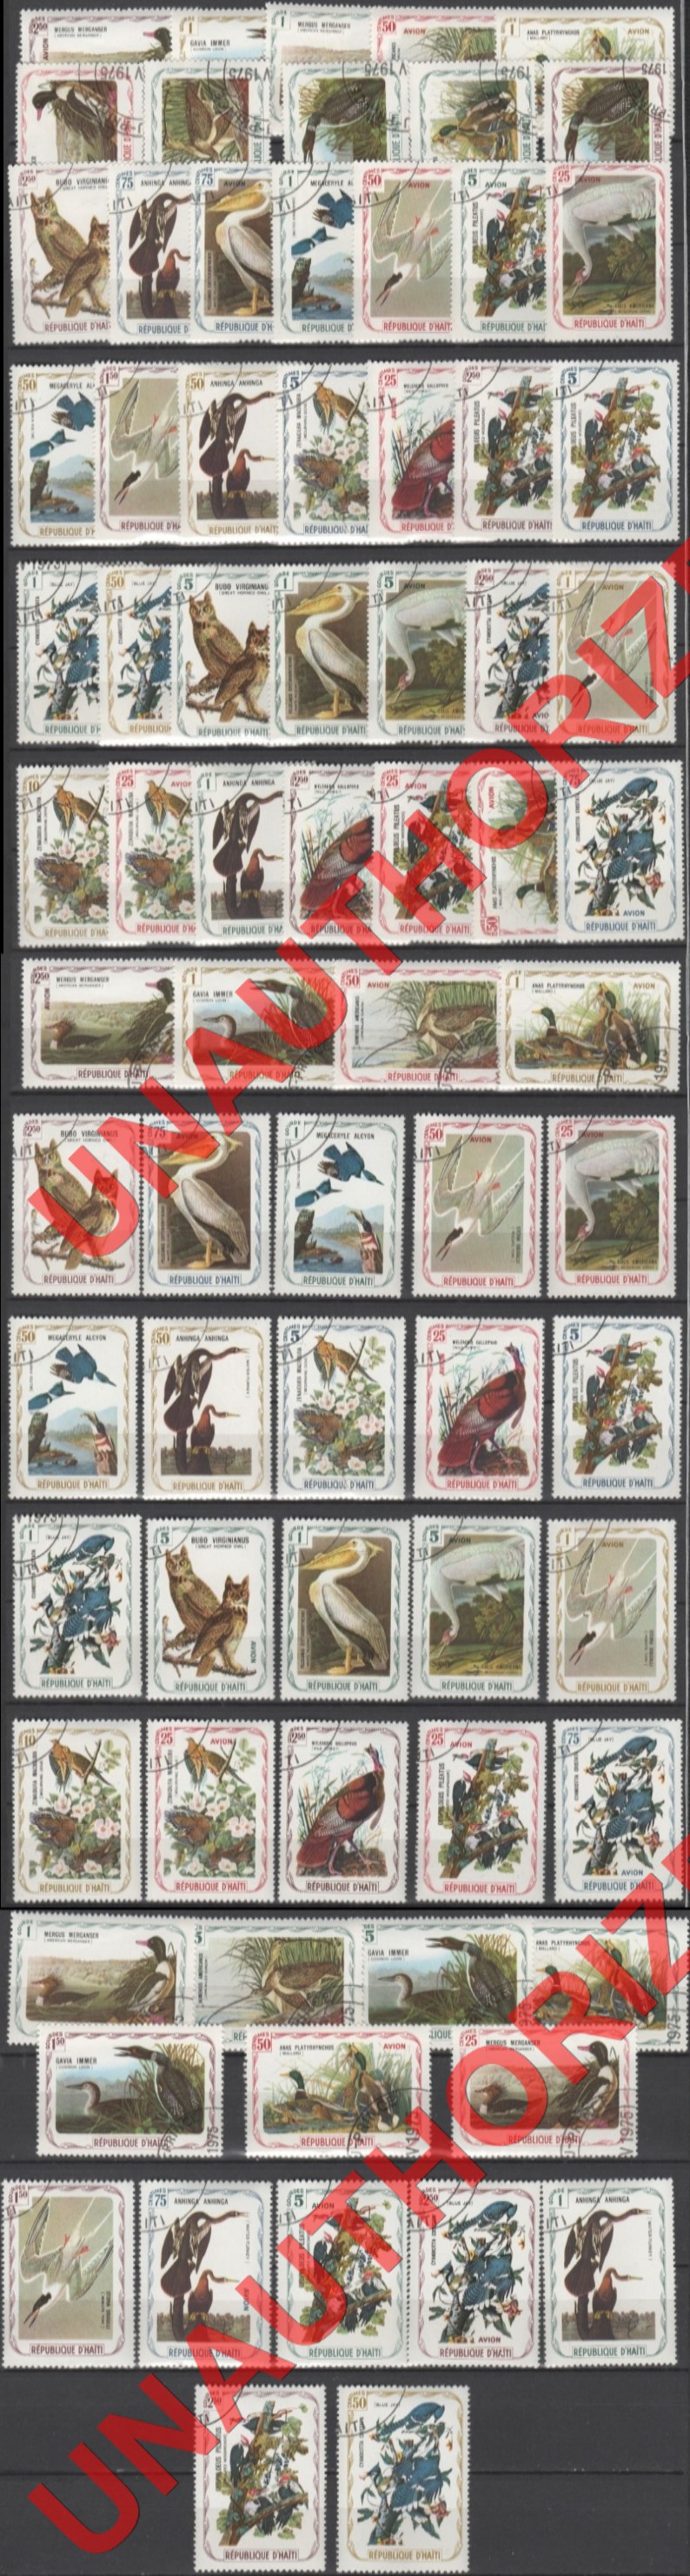 Haiti 1975 Unauthorized Audubon Birds Stamp Set of 75